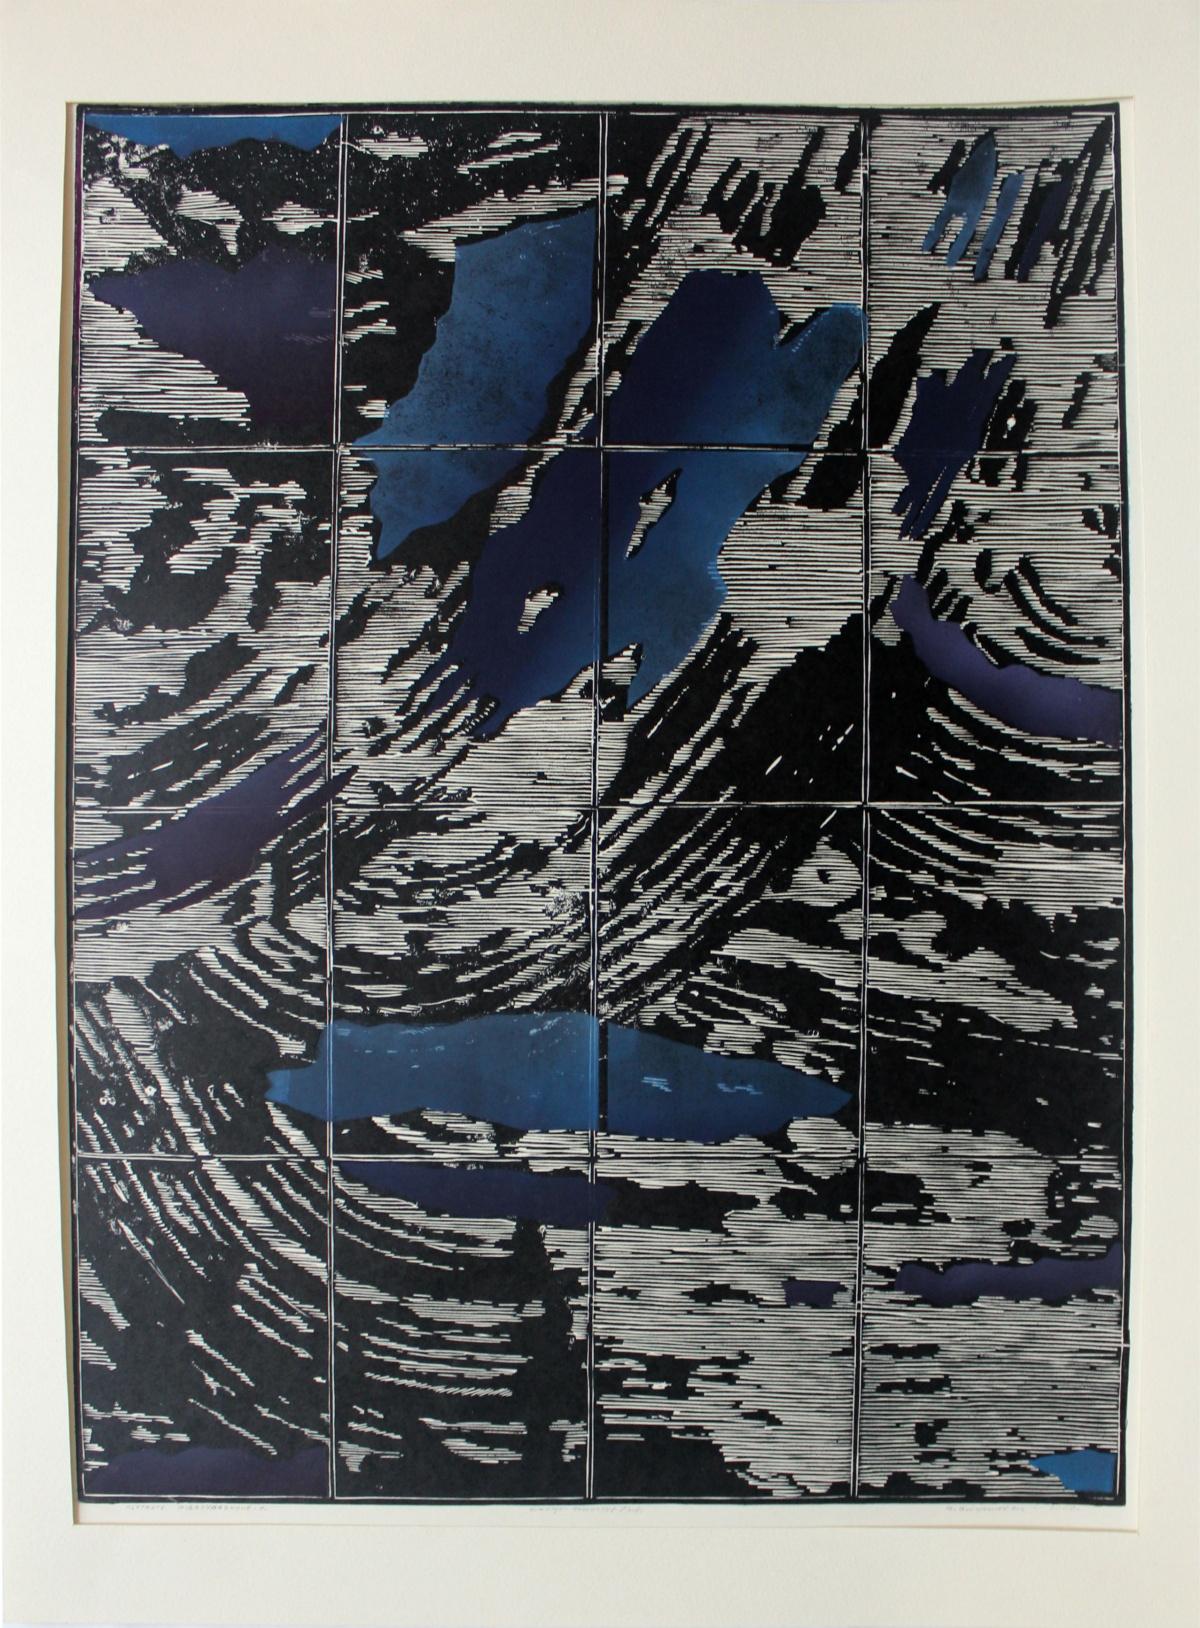 Formes non accidentelles - XXe siècle, gravure sur bois et linogravure abstraite colorée - Print de Ryszard Gieryszewski